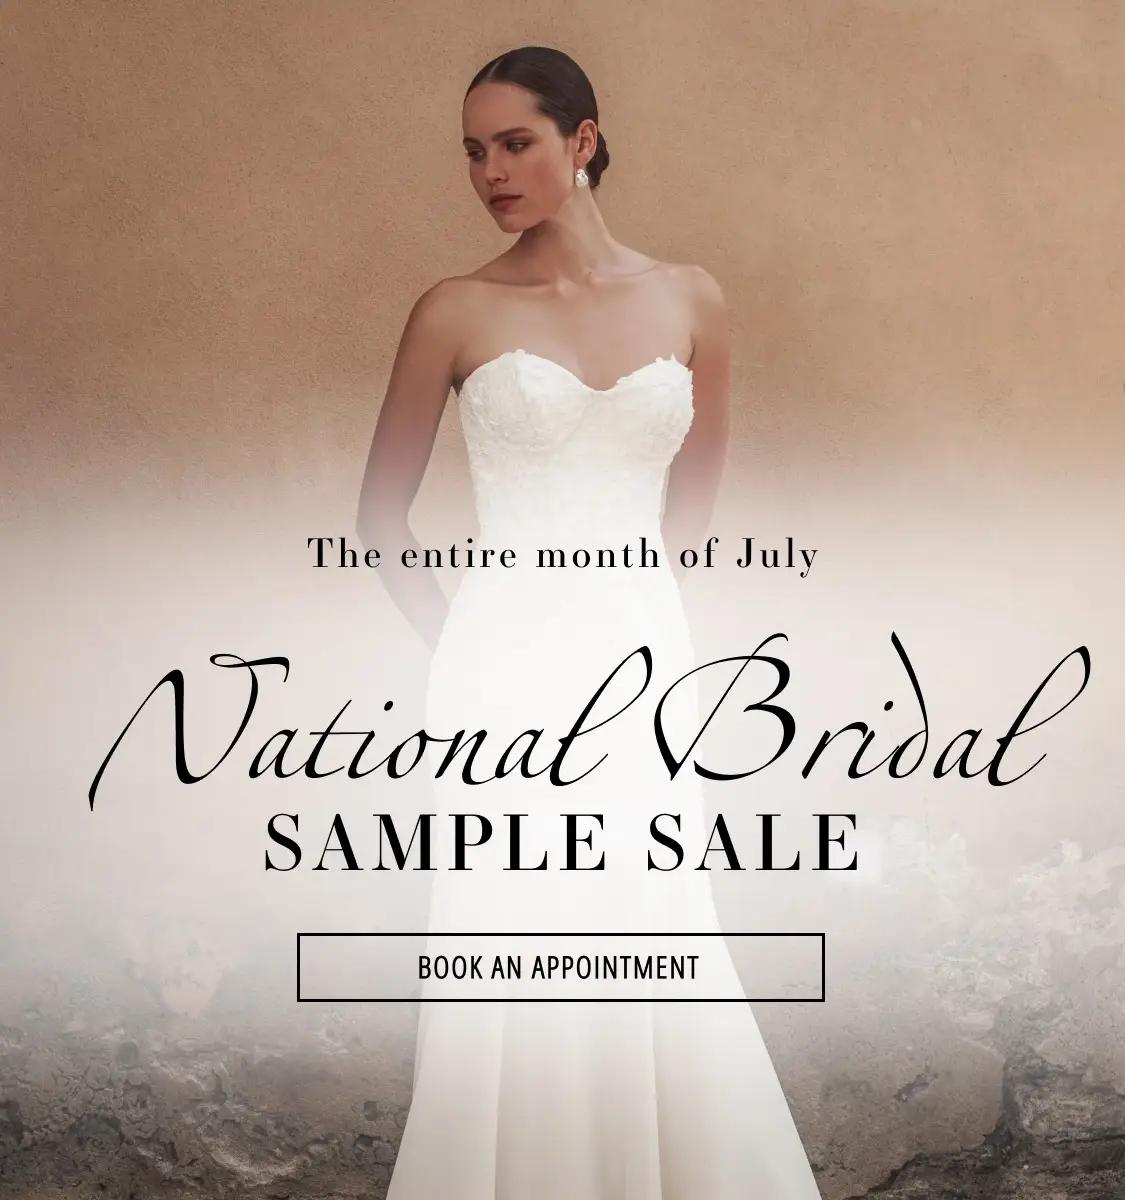 National Bridal Sample Sale Mobile Banner